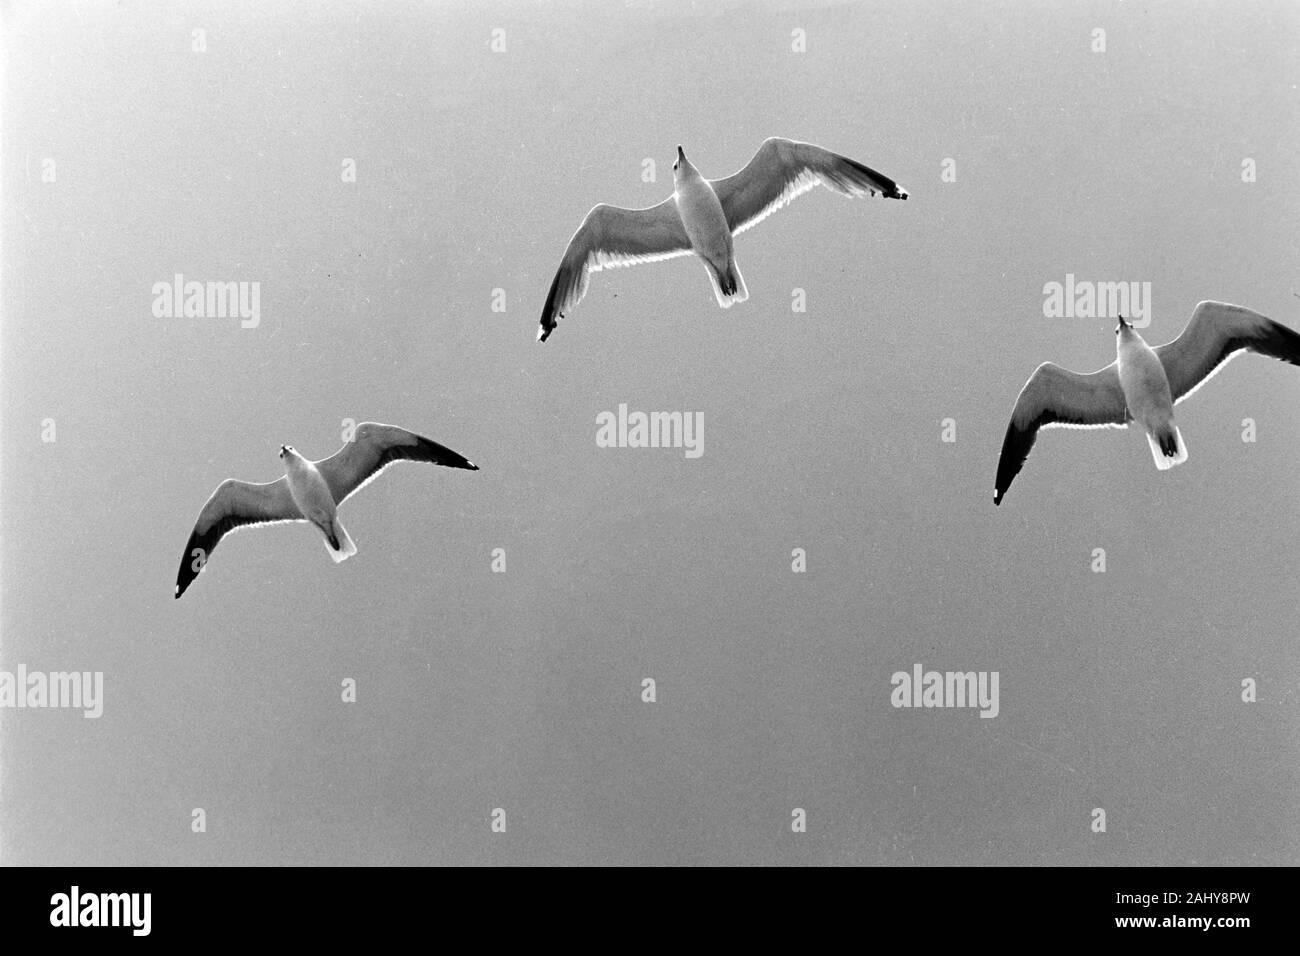 Möwen fliegen am Heck der Prinzessin Christina während Fahrt nach Göteborg, Schweden, 1960er. Seagulls fly at the tail of Princess Christina while driving to Gothenburg, Sweden, 1960s. Stock Photo